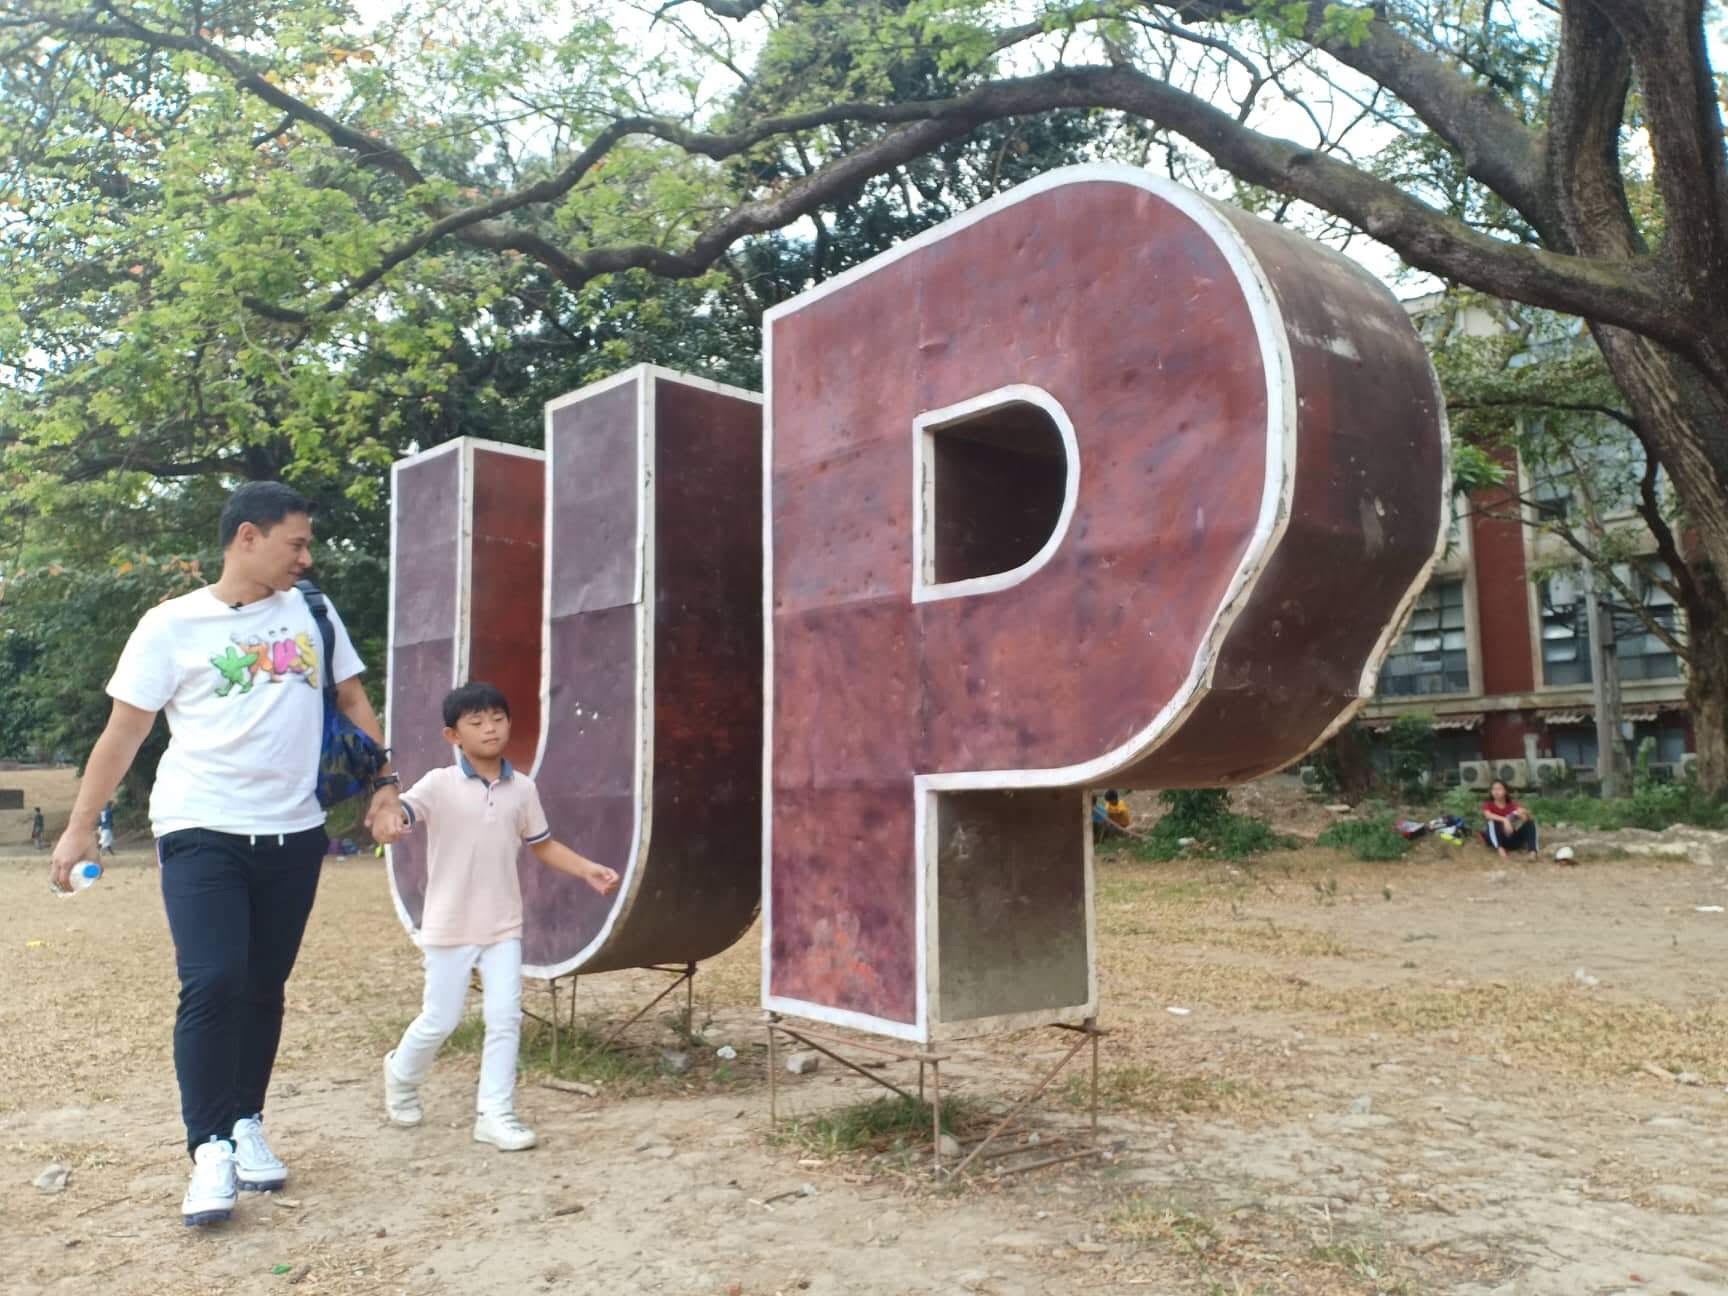 Angara bonding with son at UP